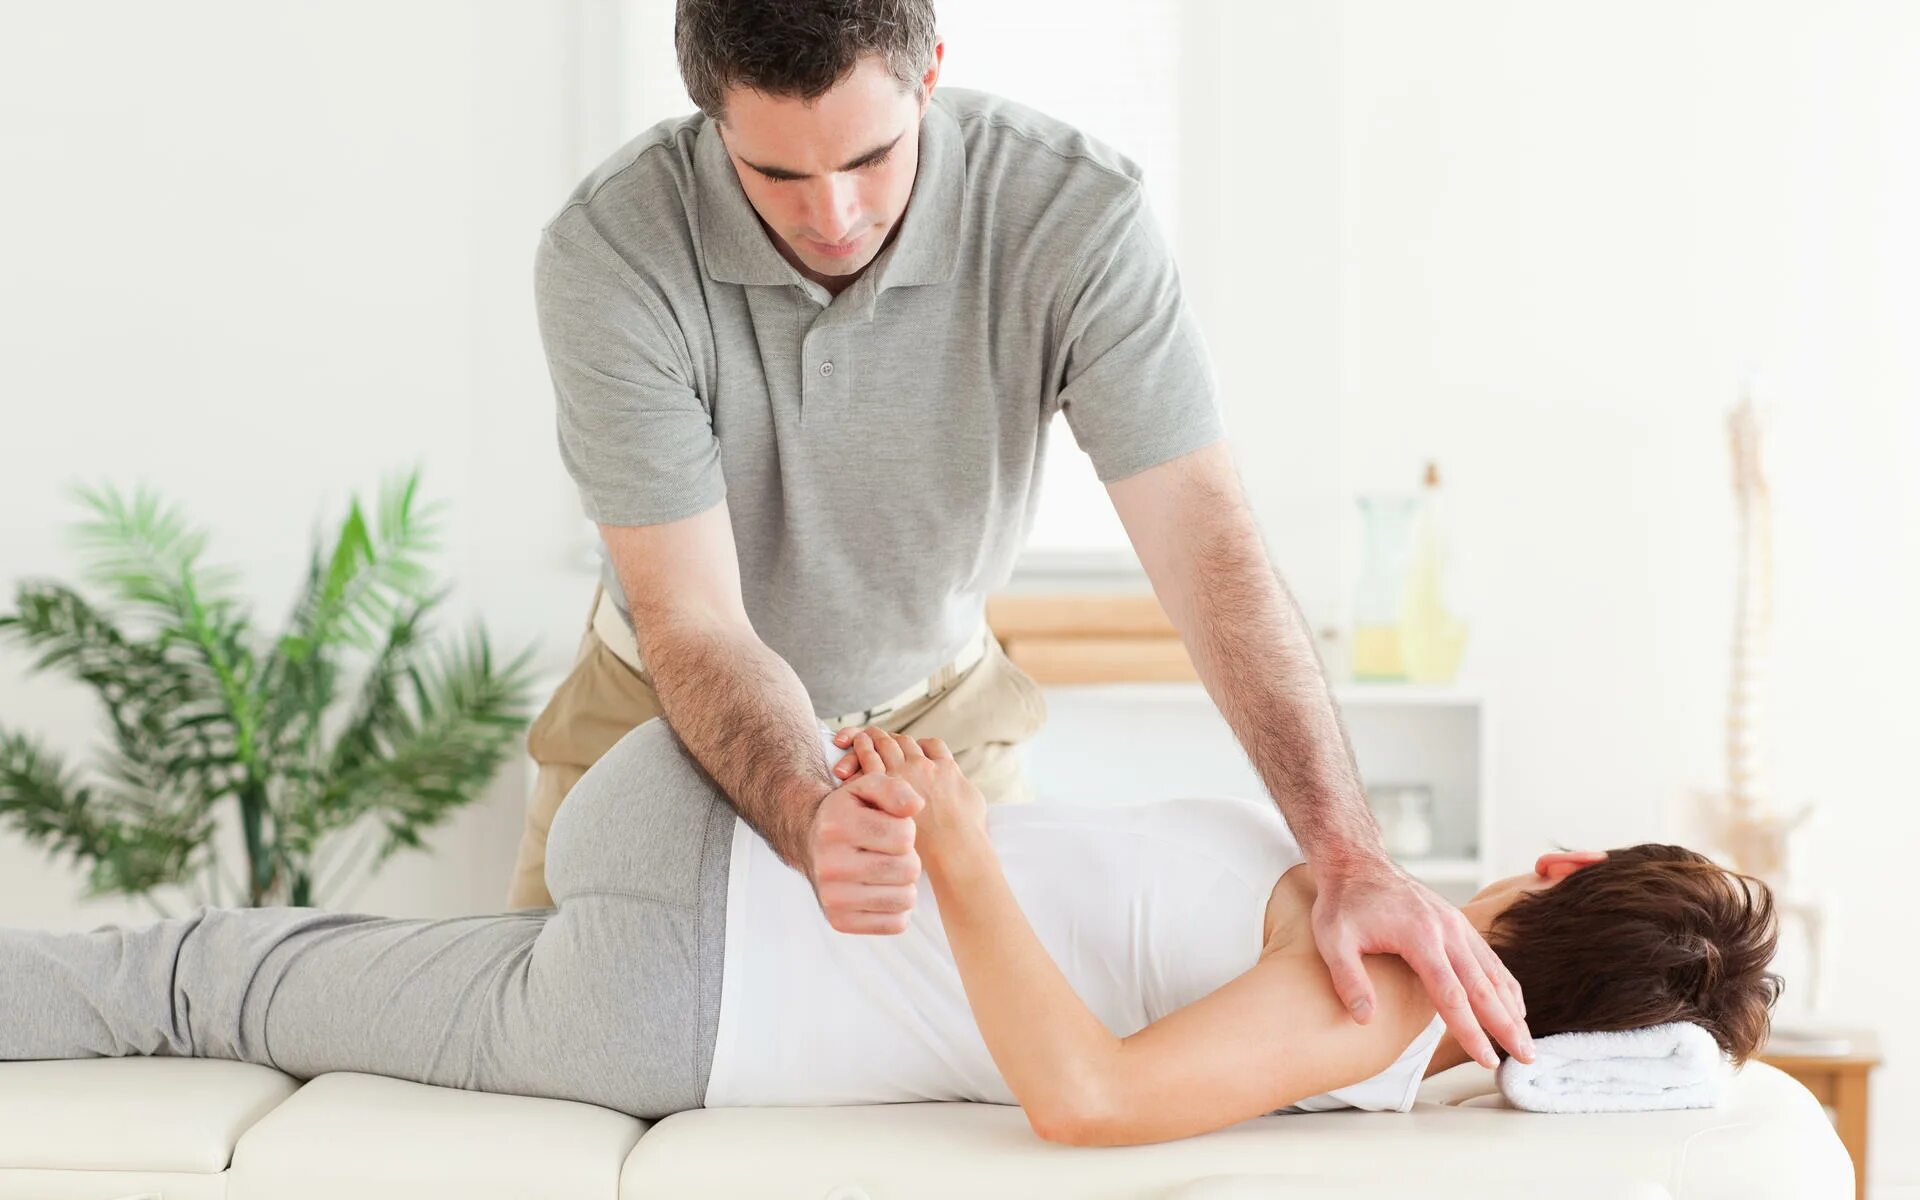 Massage therapist. Габриэль Аскуль. Мануальная терапия. Мануальная терапия позвоночника. Мануальный массаж.